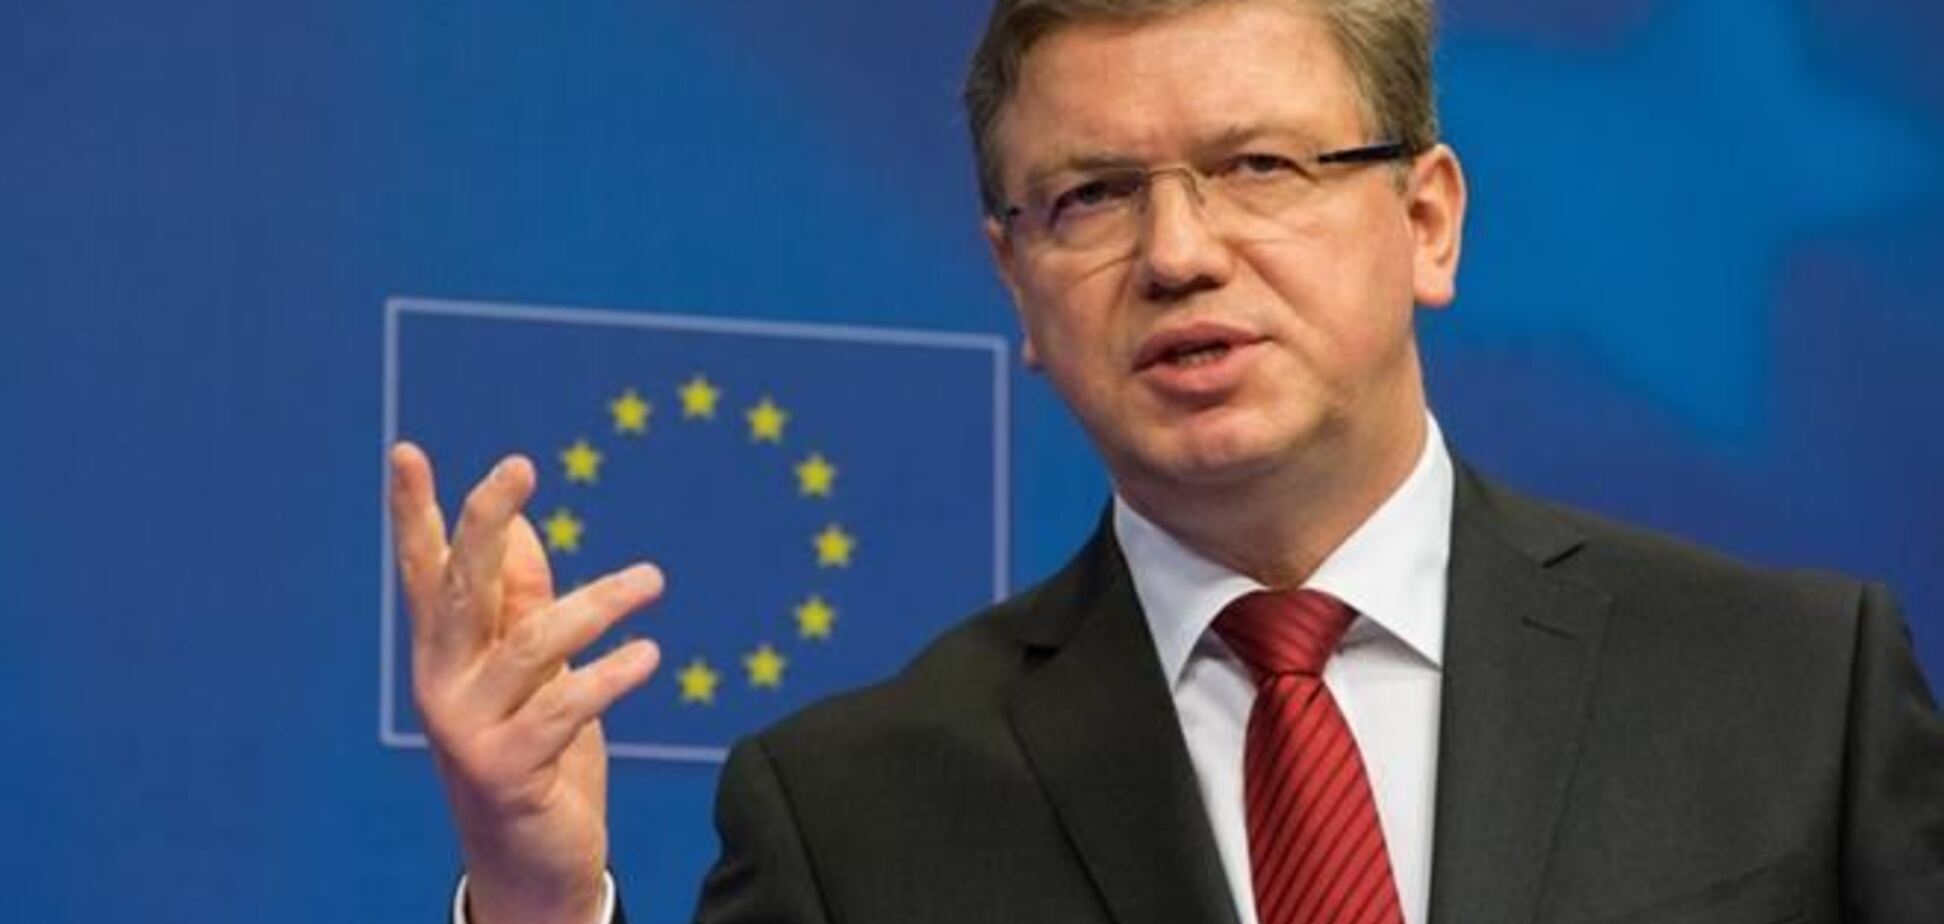 Українці отримають безвізовий режим з ЄС на відміну від кримчан - Фюле